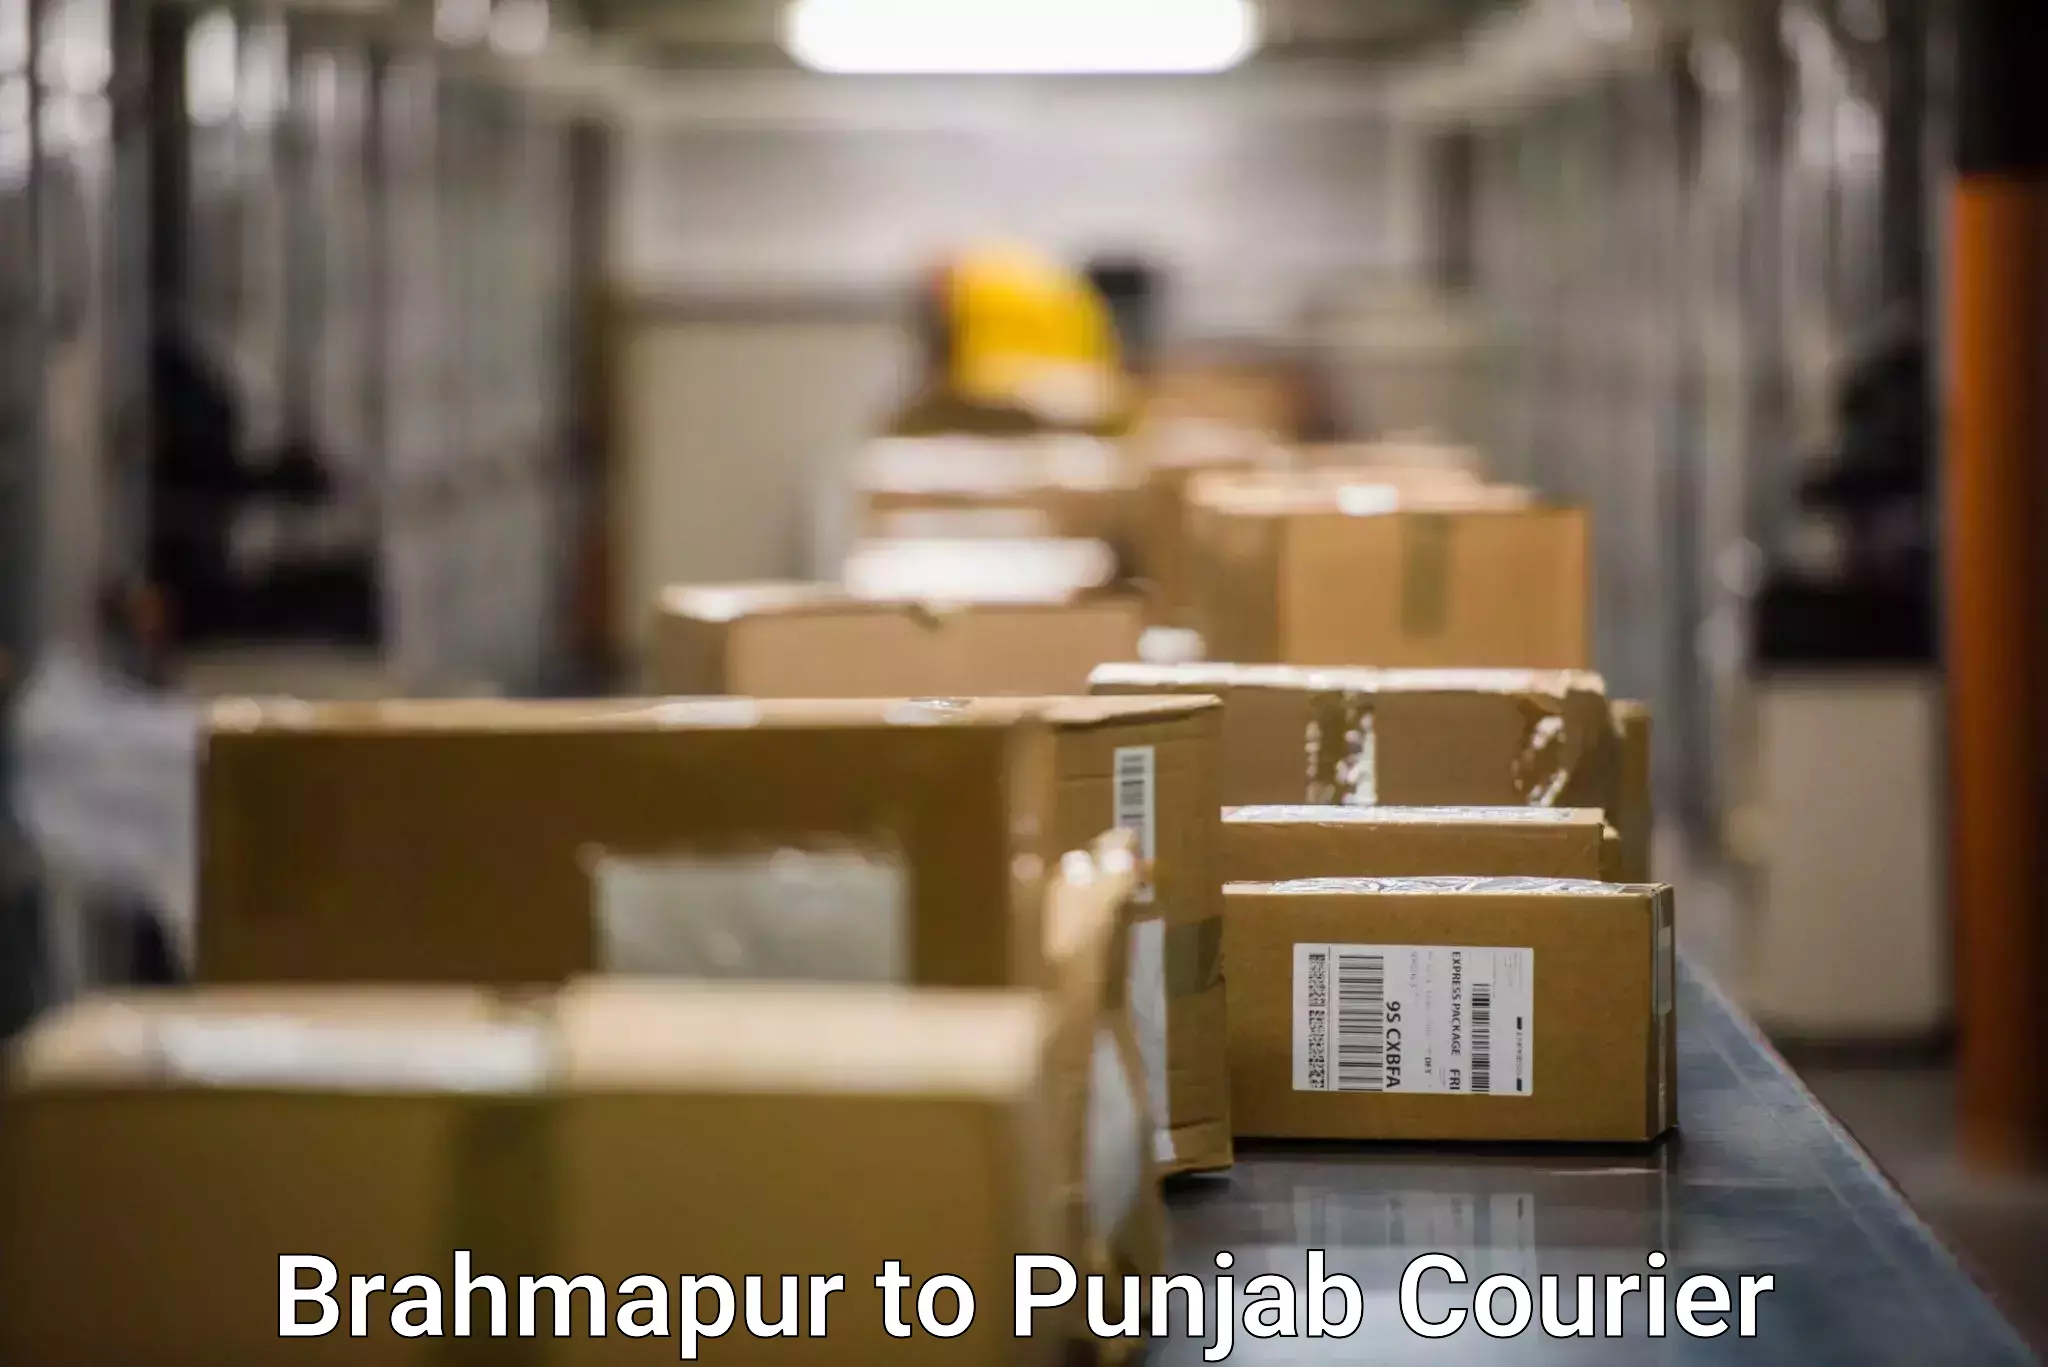 Courier dispatch services Brahmapur to Batala